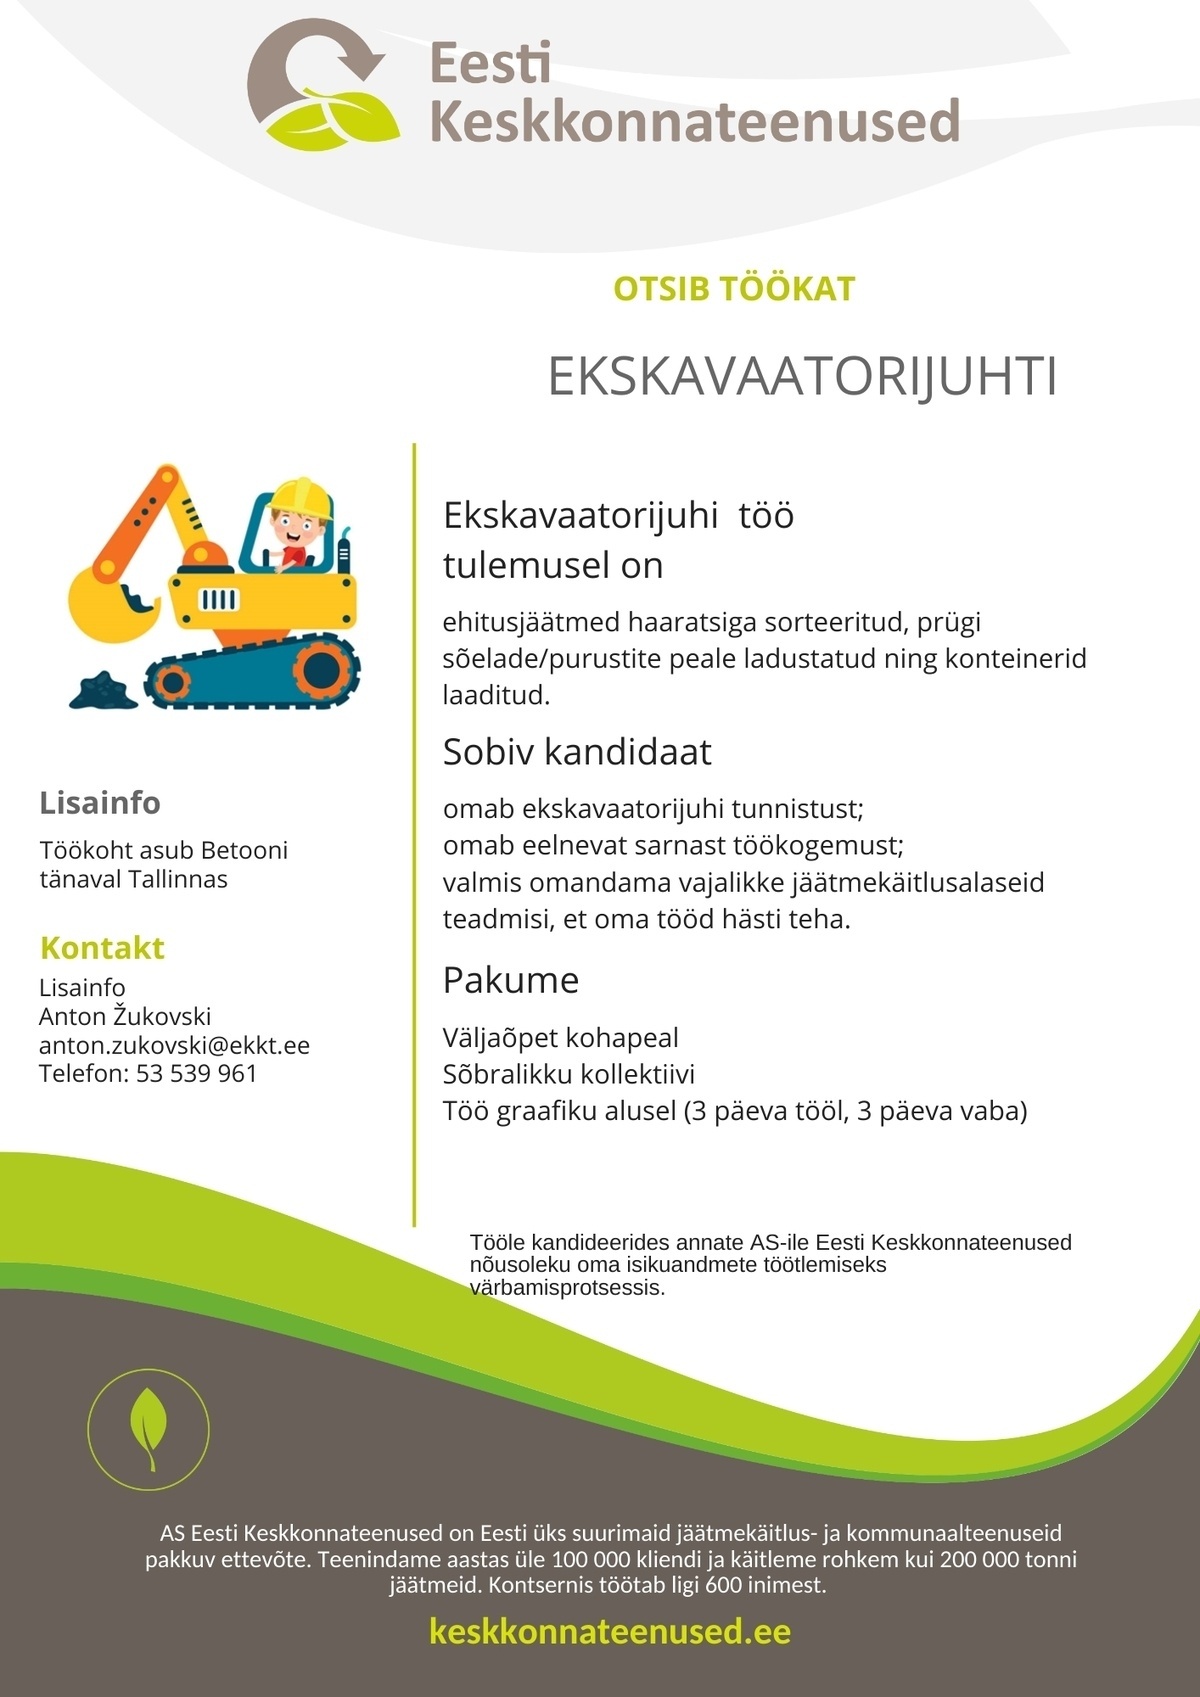 Eesti Keskkonnateenused AS Ekskavaatorijuht